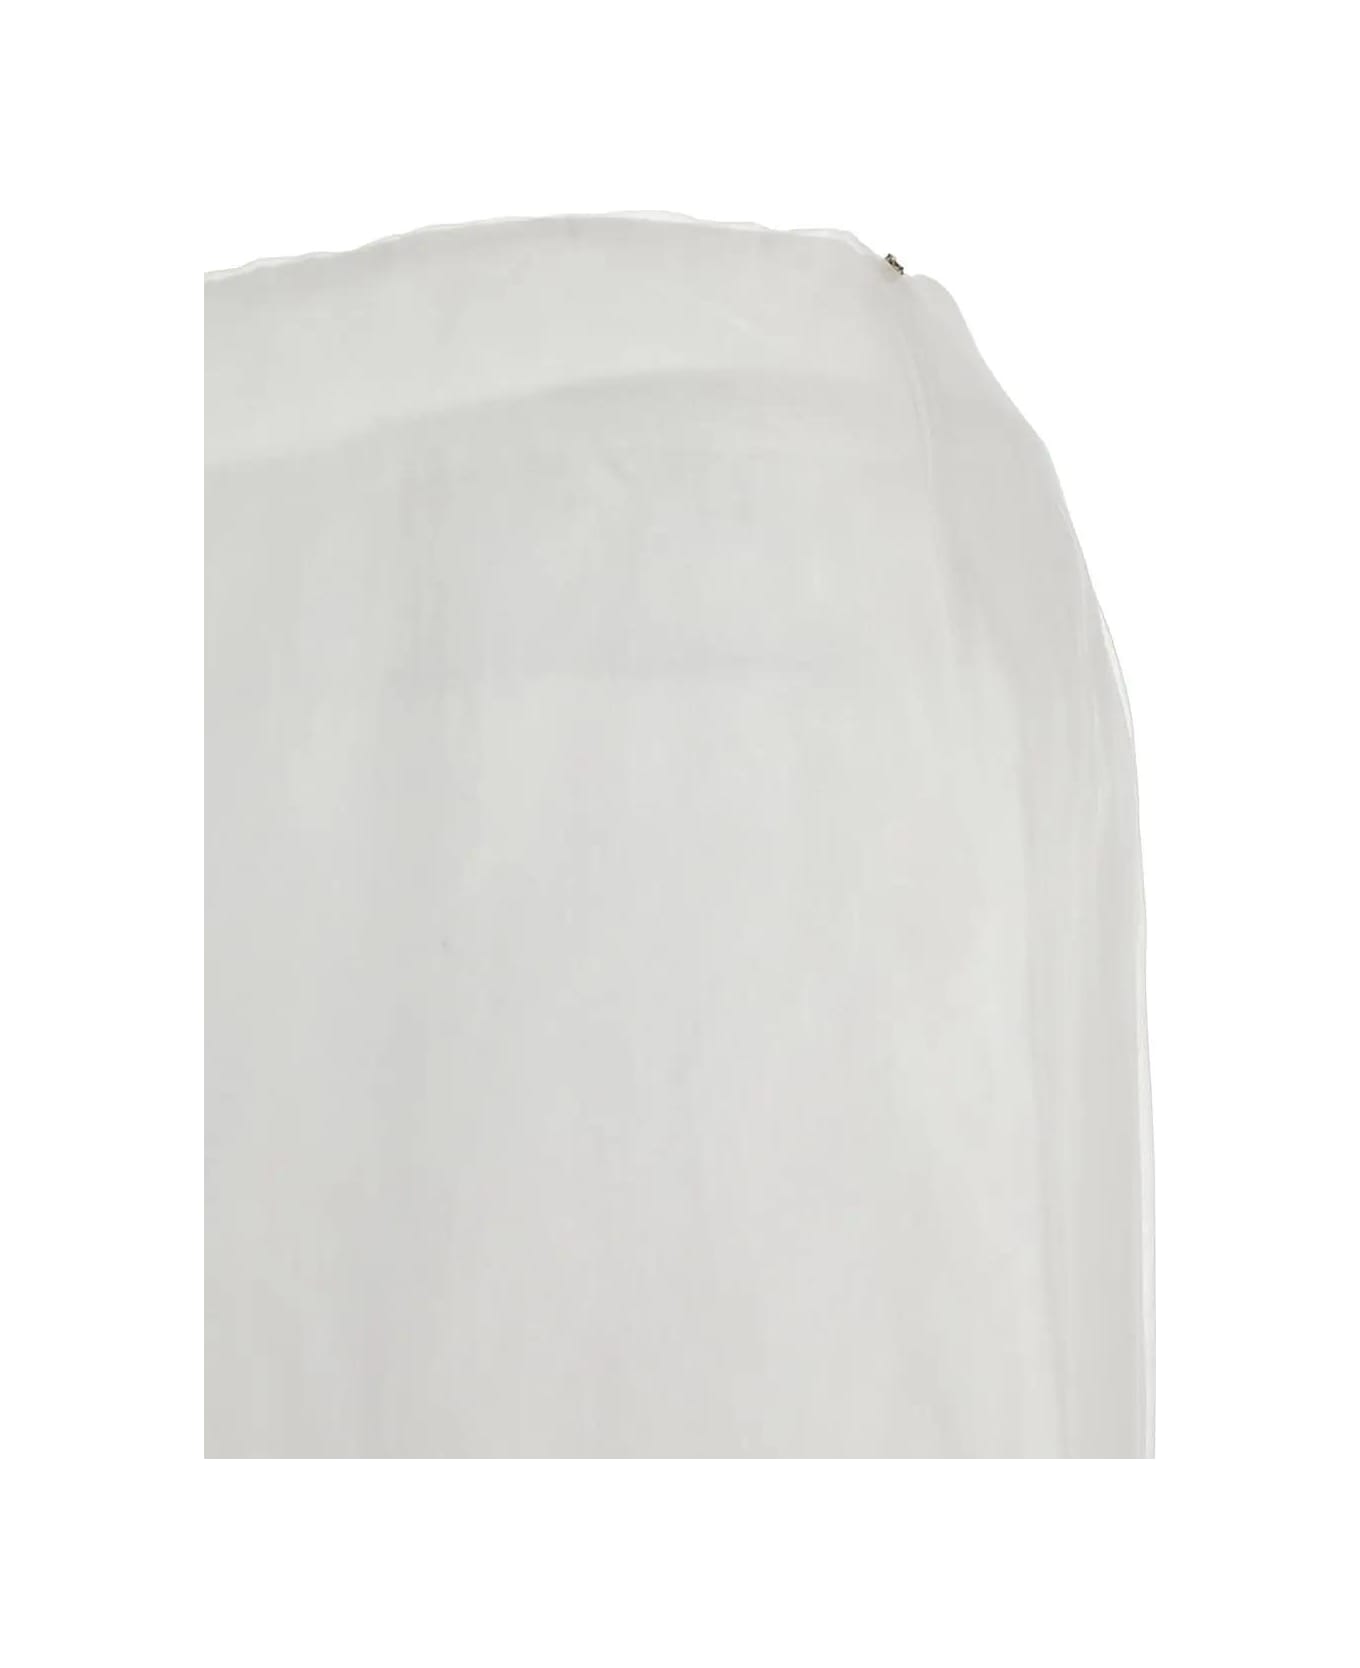 SportMax Aceti Skirt - White